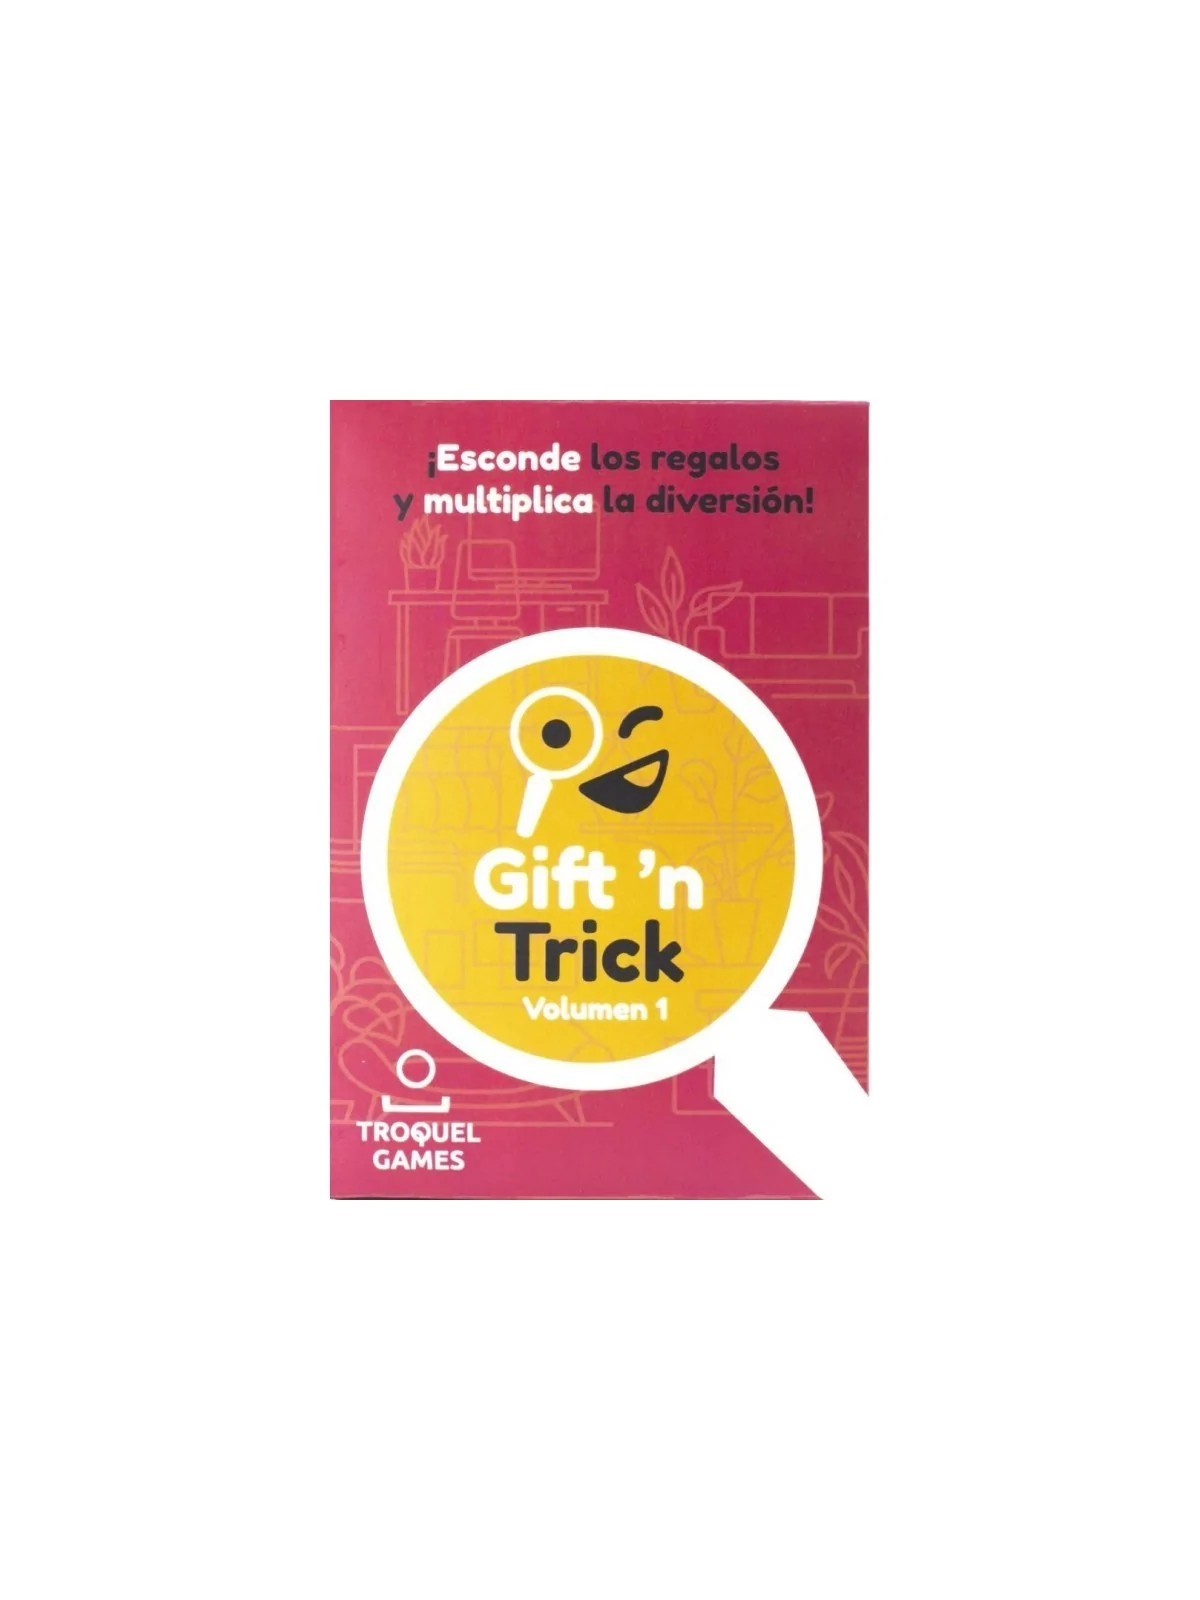 Comprar Gift 'n Trick Vol.1 barato al mejor precio 6,26 € de Troquel G